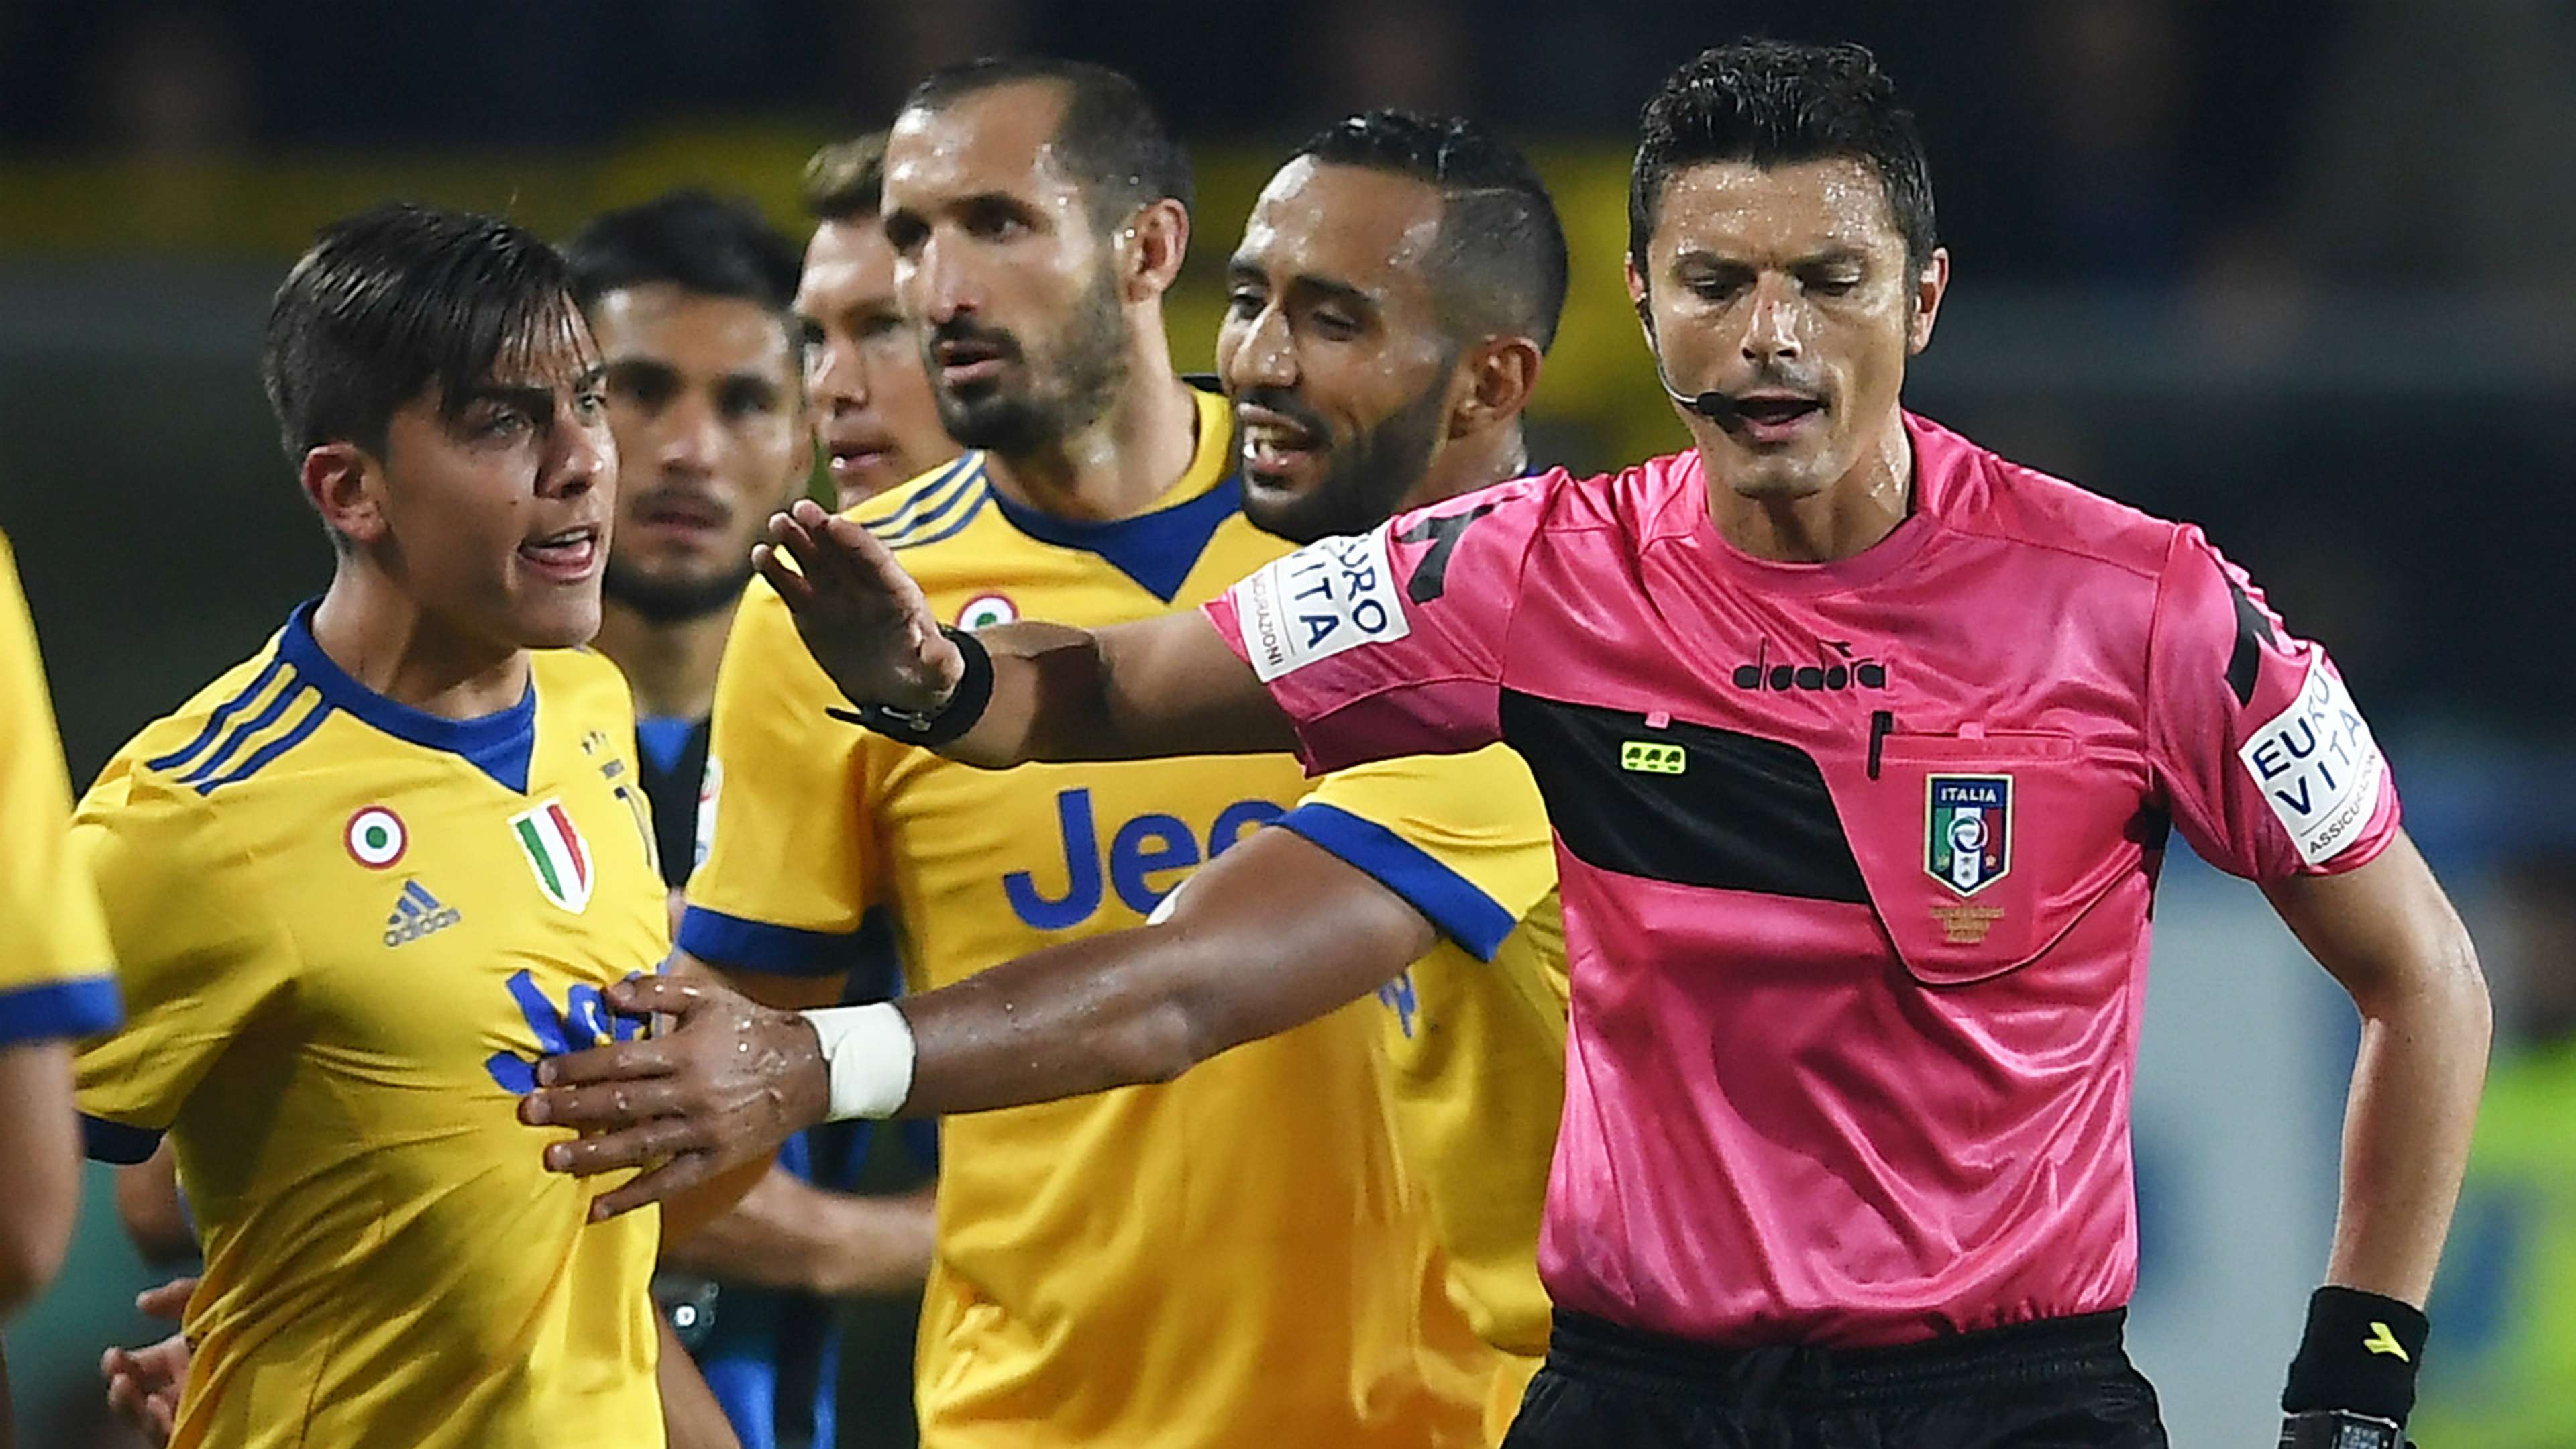 Juventus referee